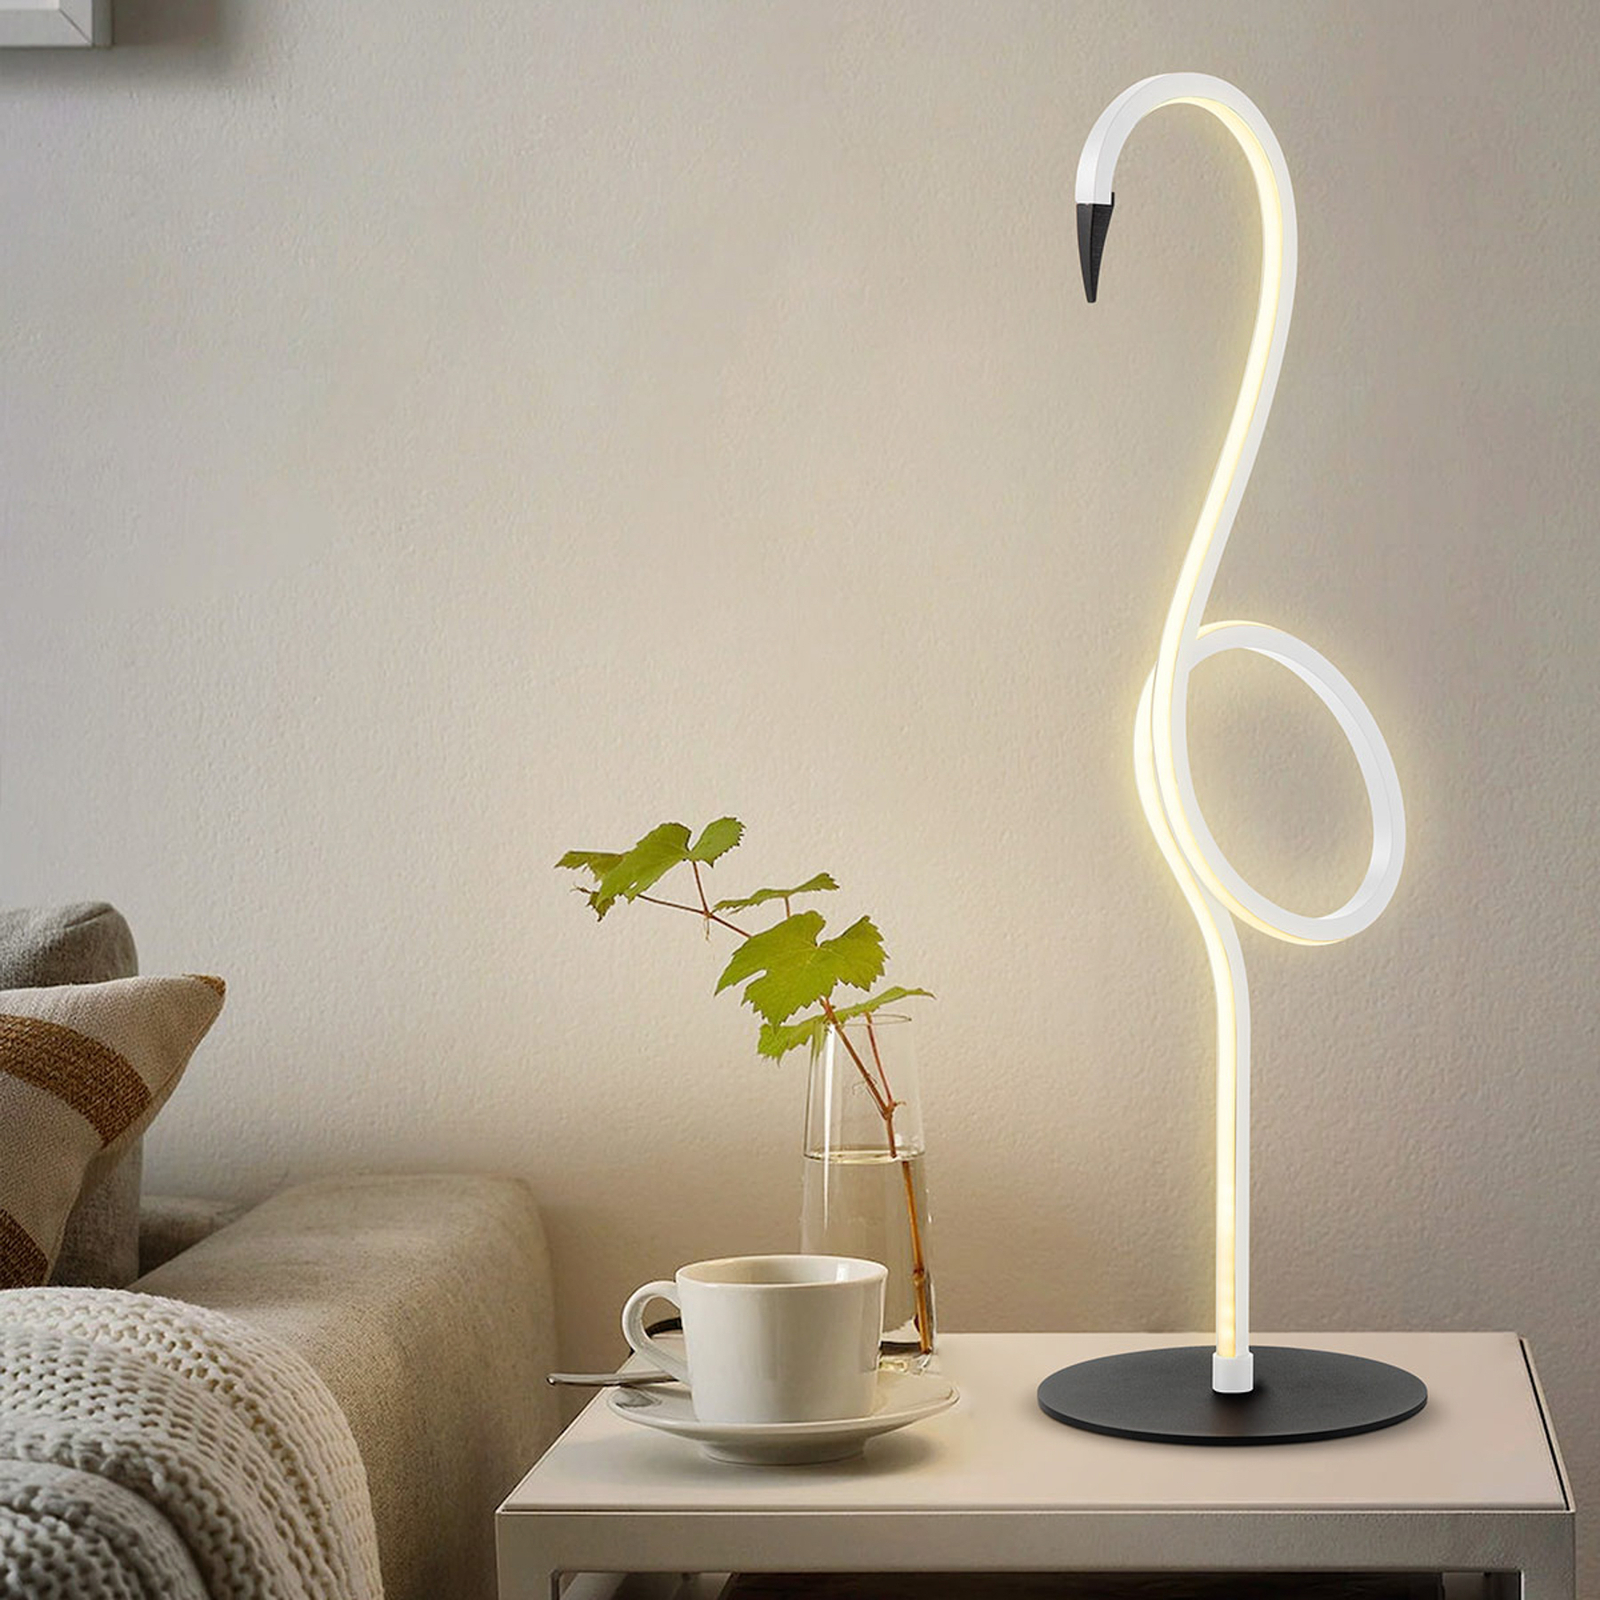 Lampa stołowa LED Flamingo, biała, metal, 50 cm wysokości